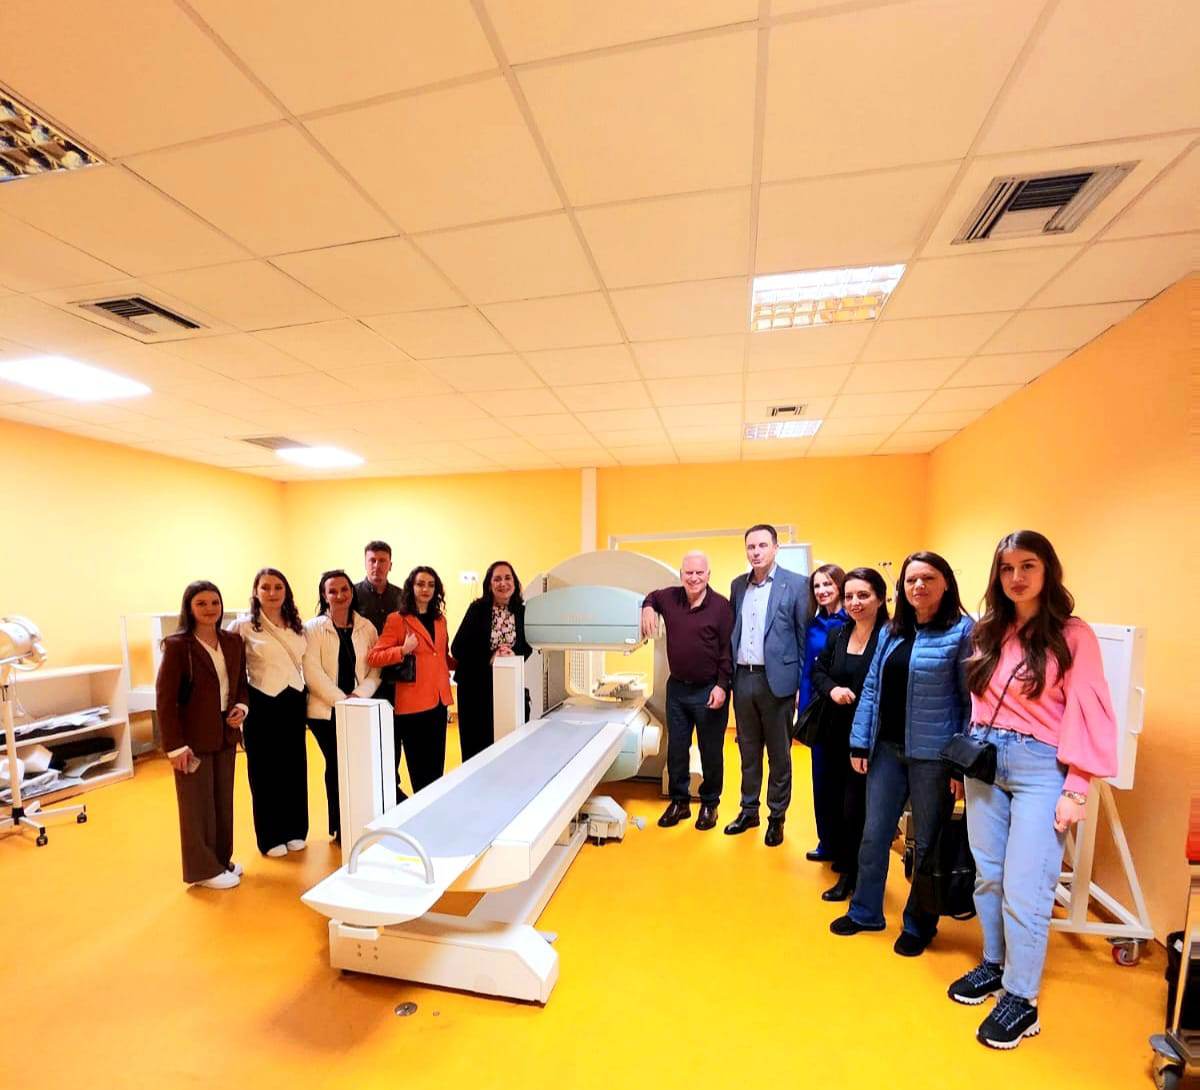 Studentët e programit Shëndeti Publik dhe Menaxhimi në UBT zhvilluan një vizitë studimore në Spitalin “Hygea” në Tiranë